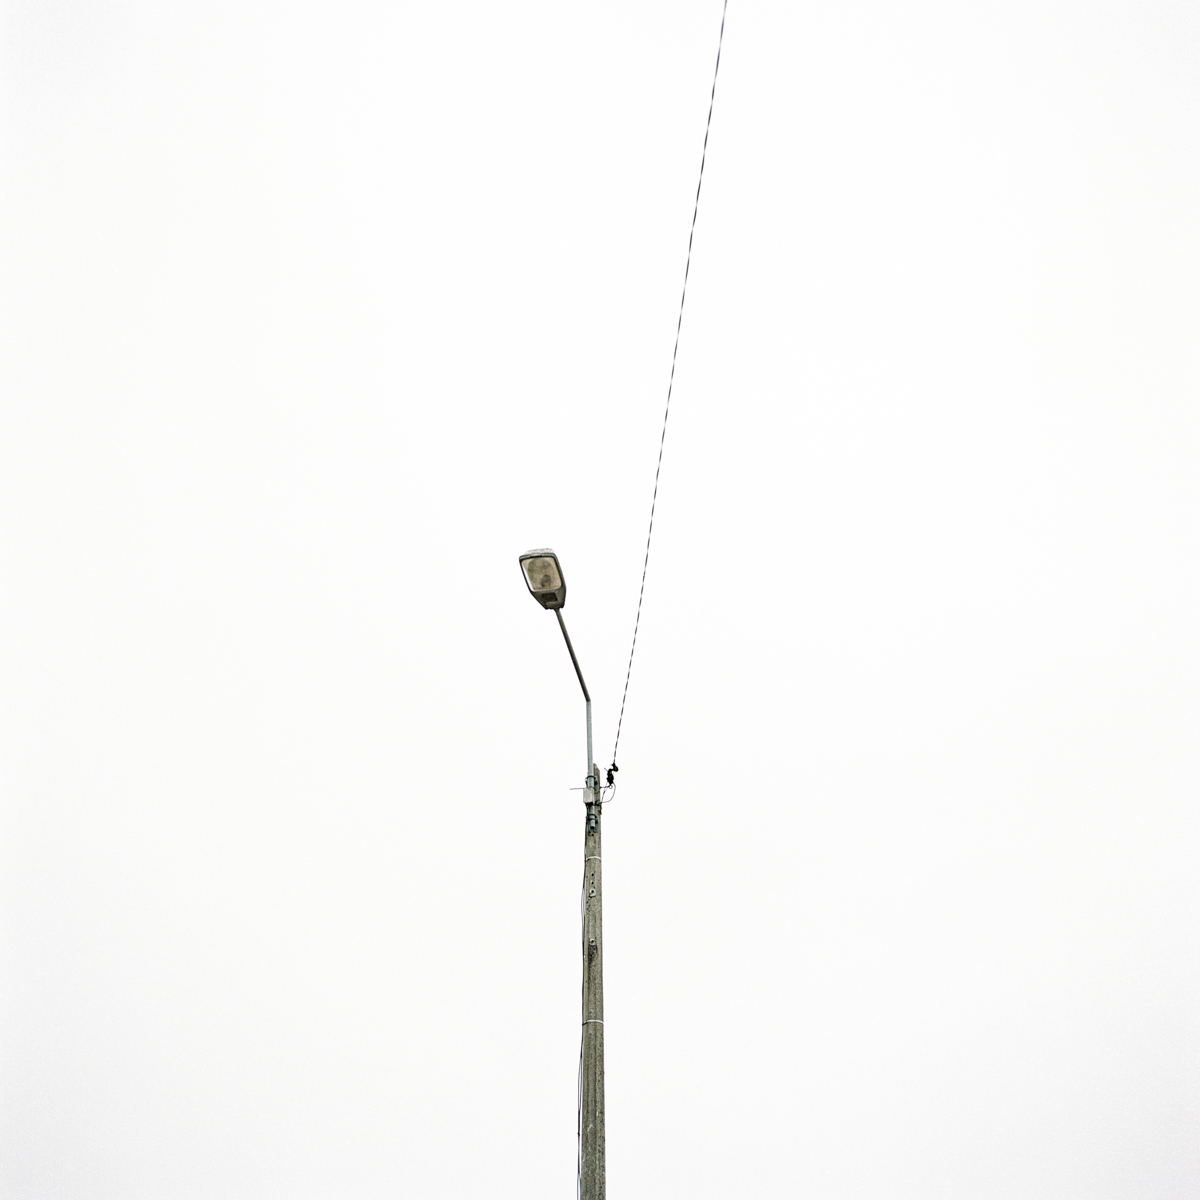 photos lampadaires poteaux electriques tom fish photographe